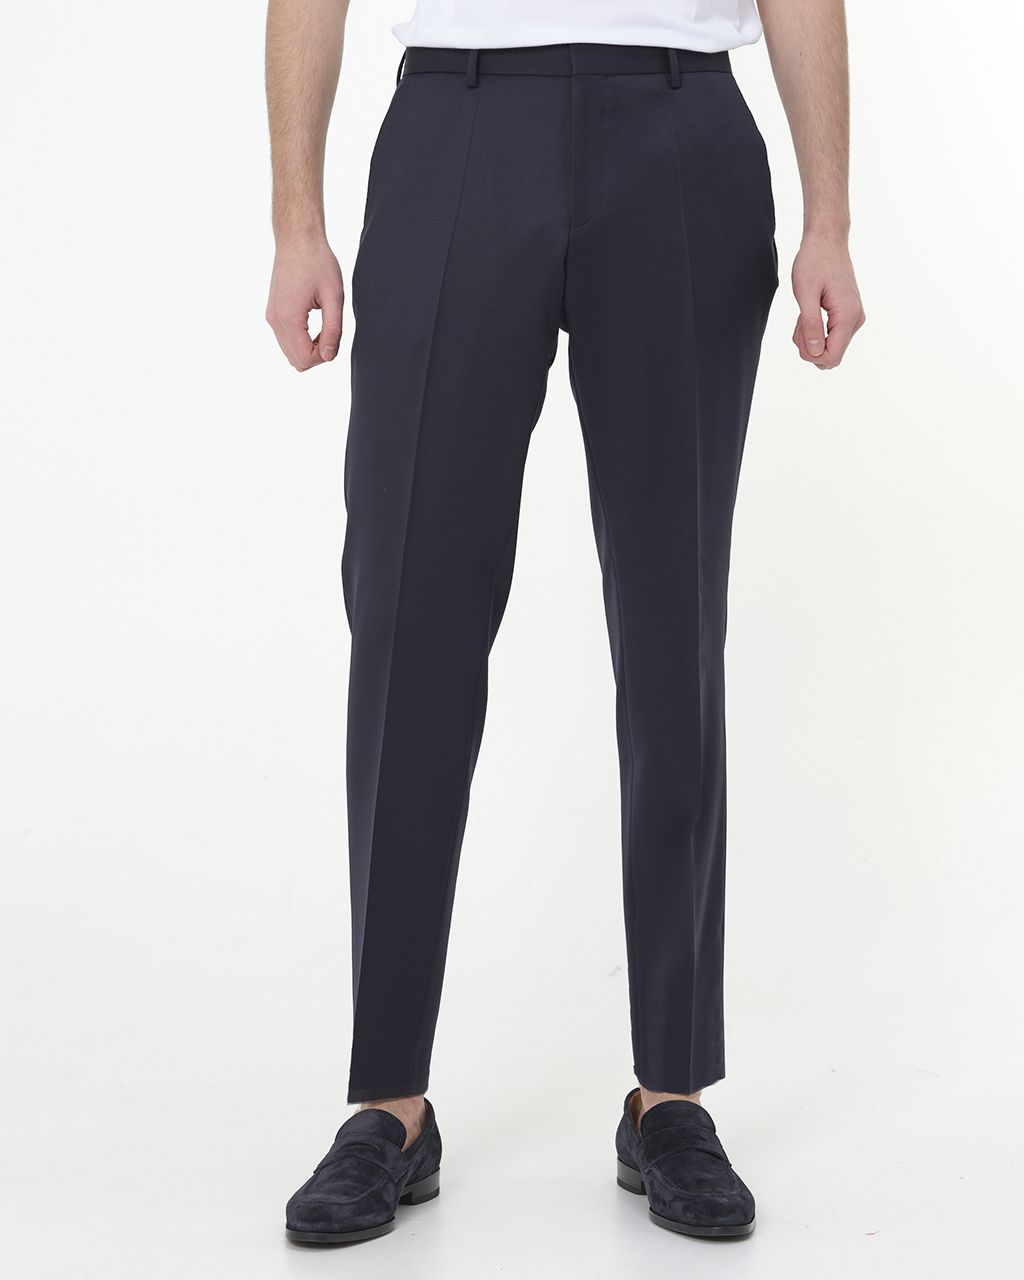 Hugo Boss Menswear Mix & Match Pantalon Donker blauw 075744-003-102